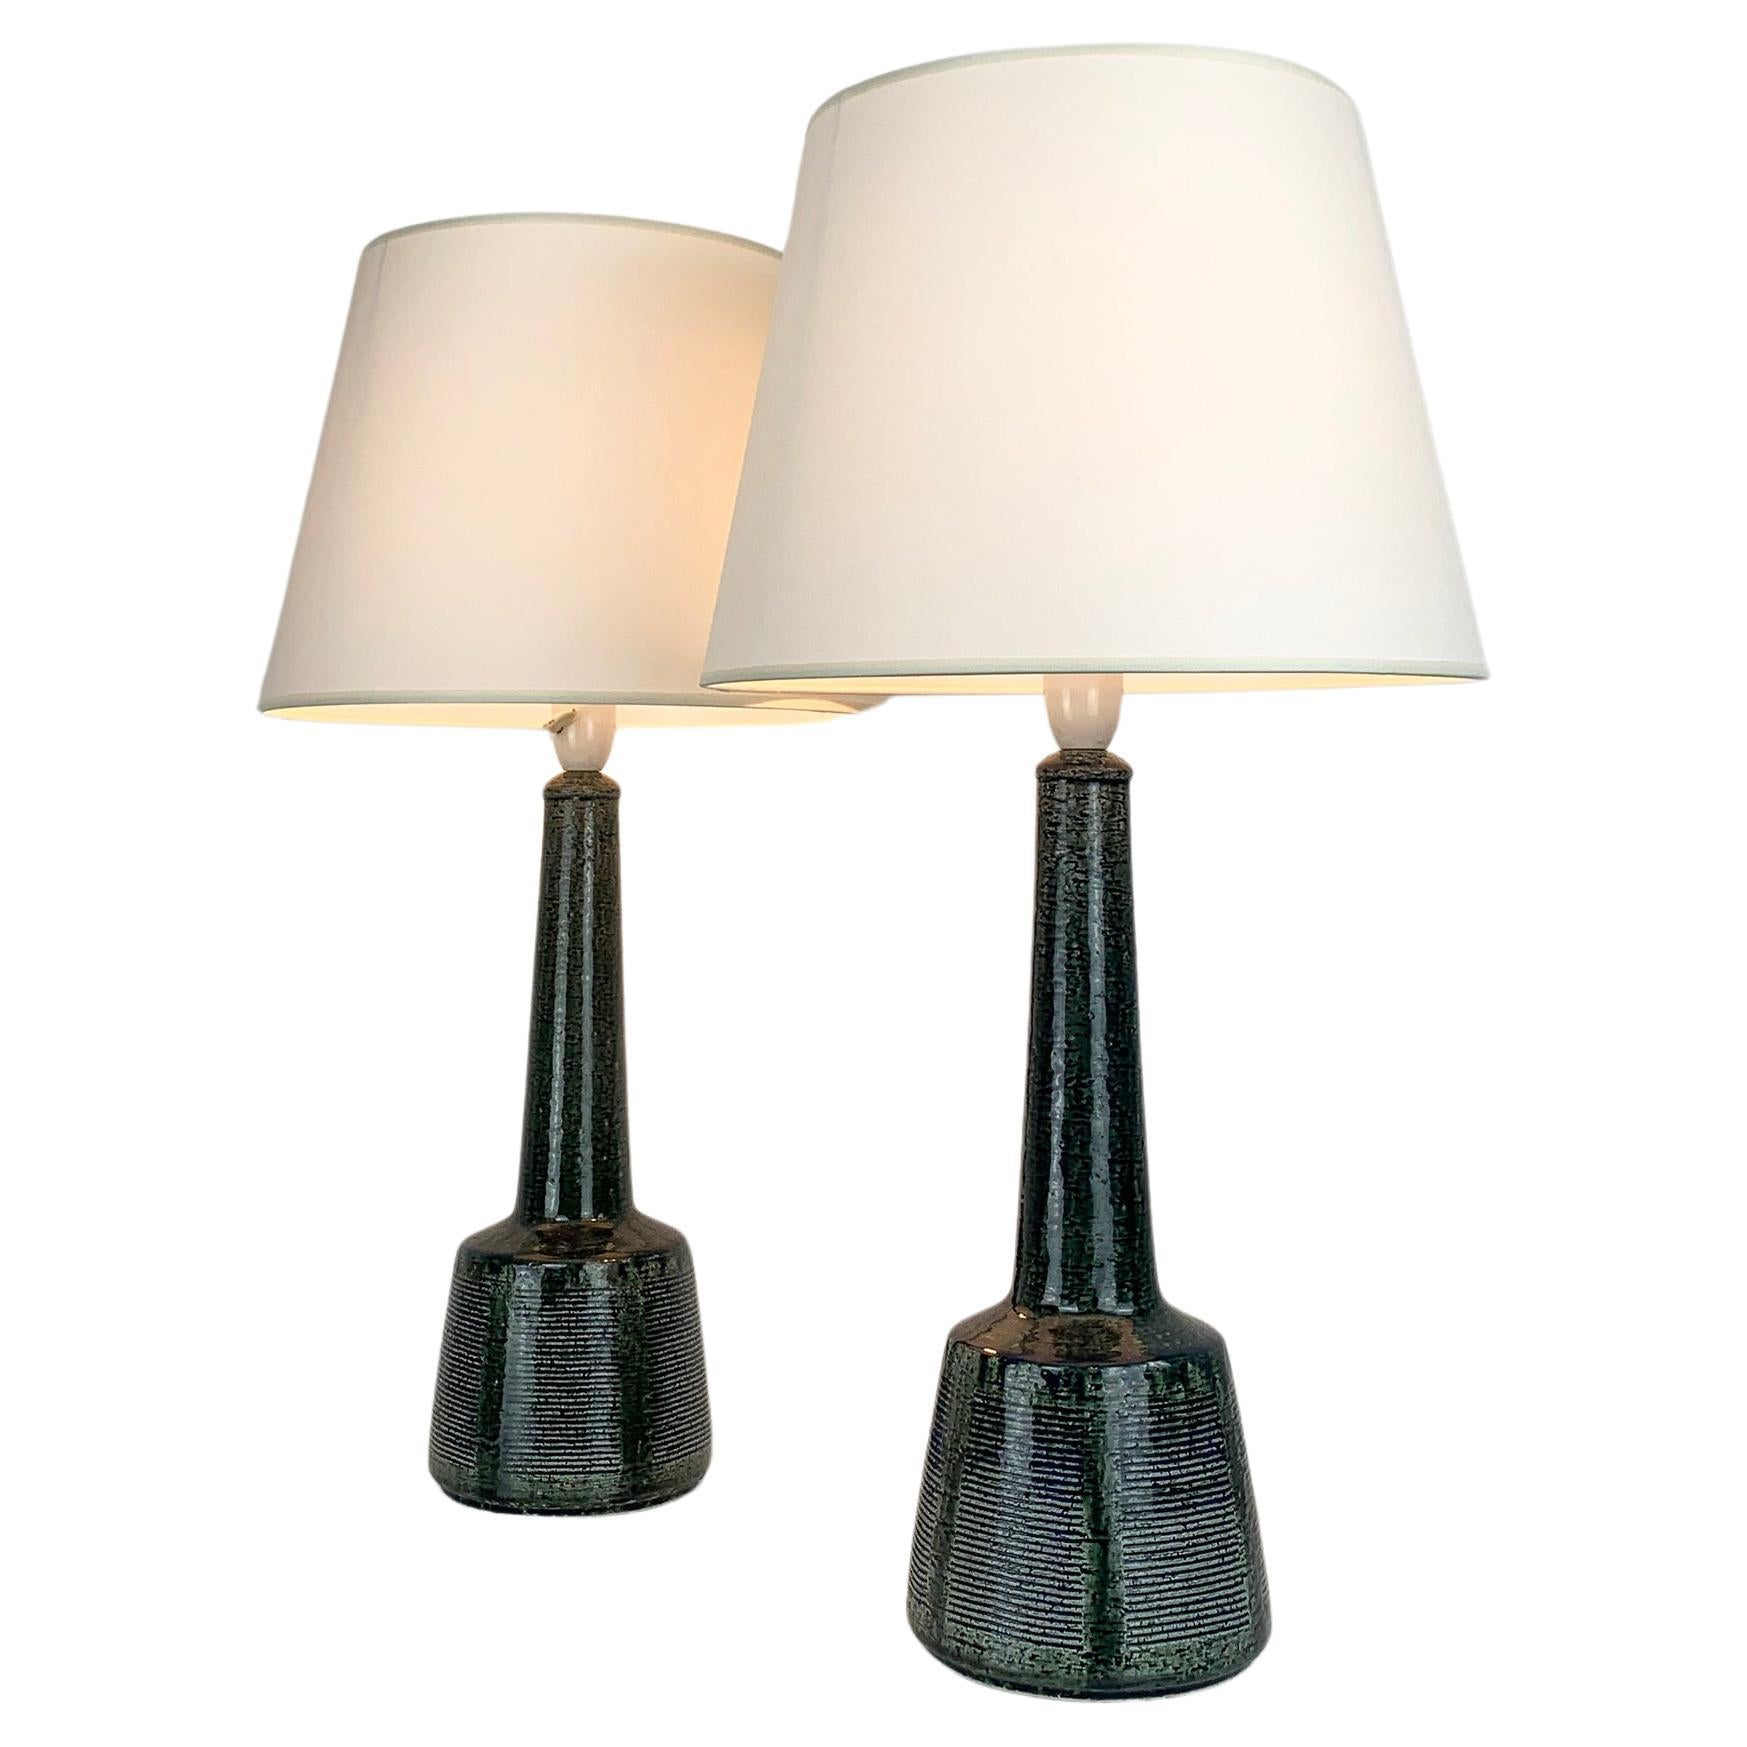 Paire de lampes de table hautes en céramique de Palshus, design d'Esben Klint pour Le Klint